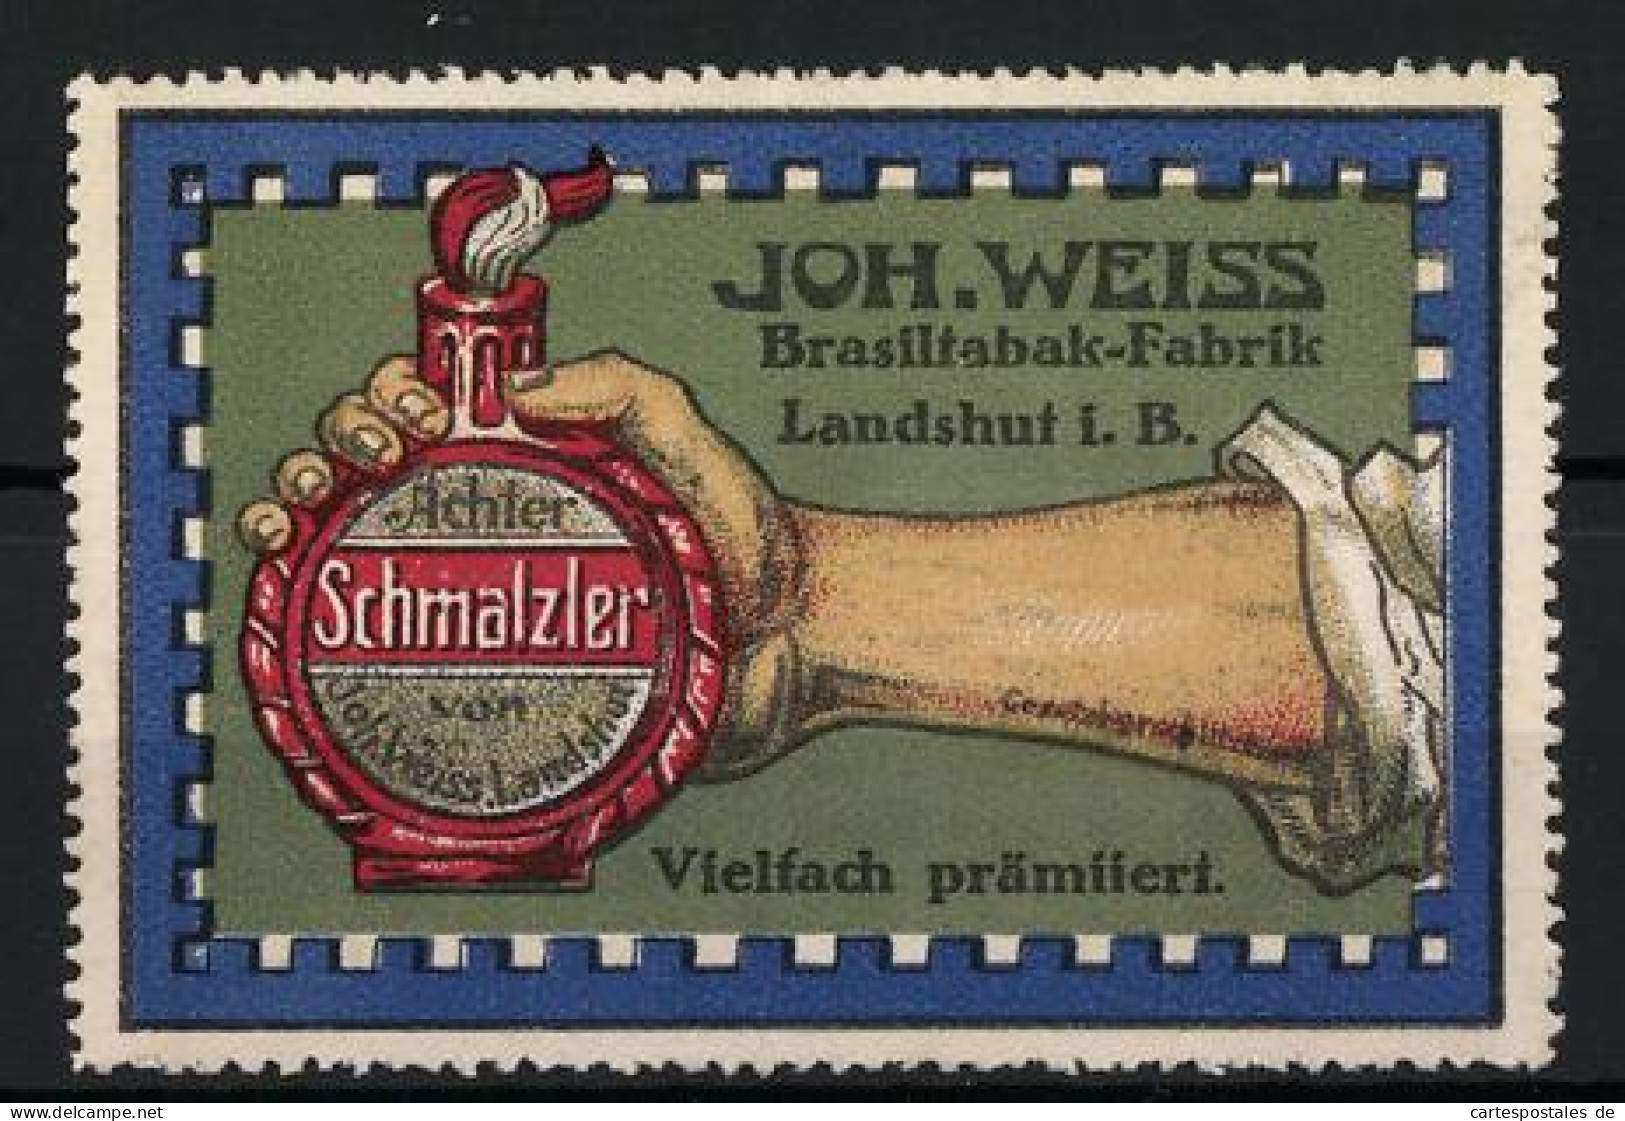 Reklamemarke Schmalzler, Brasiltabak-Fabrik Joh. Weiss, Landshut I. B., Hand Hält Eine Flasche  - Erinnophilie